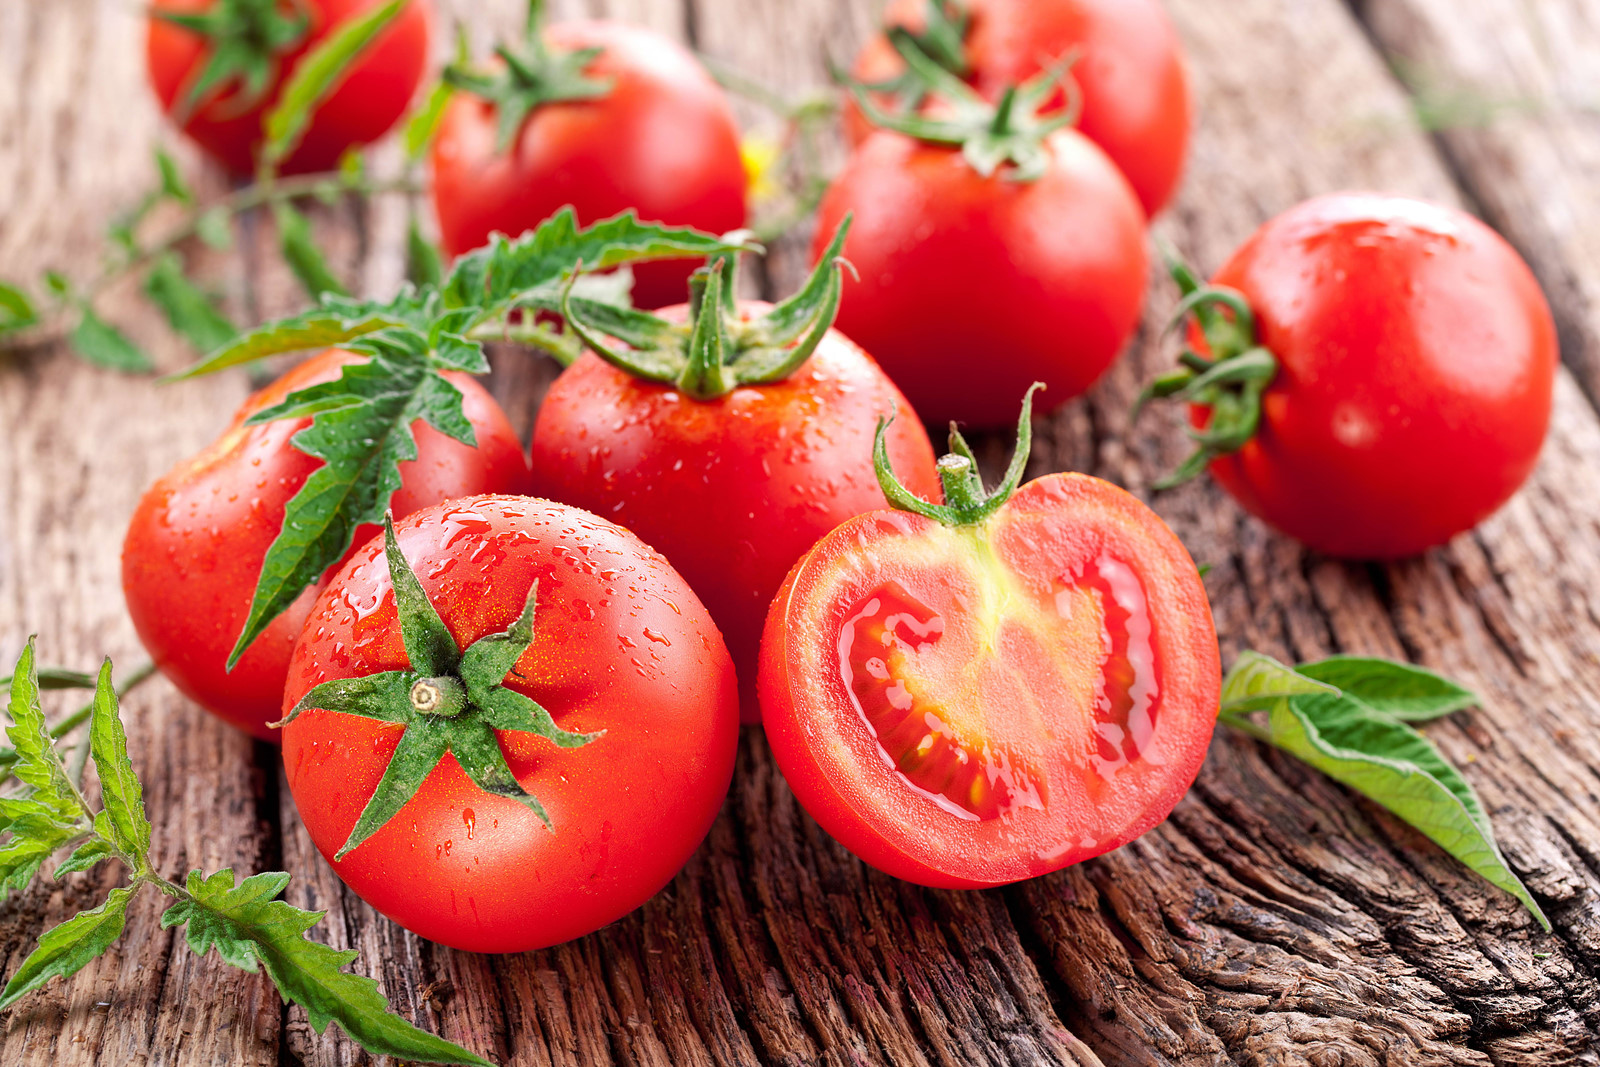 Trồng cà chua không cần hạt giống: Cách làm mới lạ nhưng đảm bảo thành công, cả năm thu hoạch mỏi tay - Ảnh 1